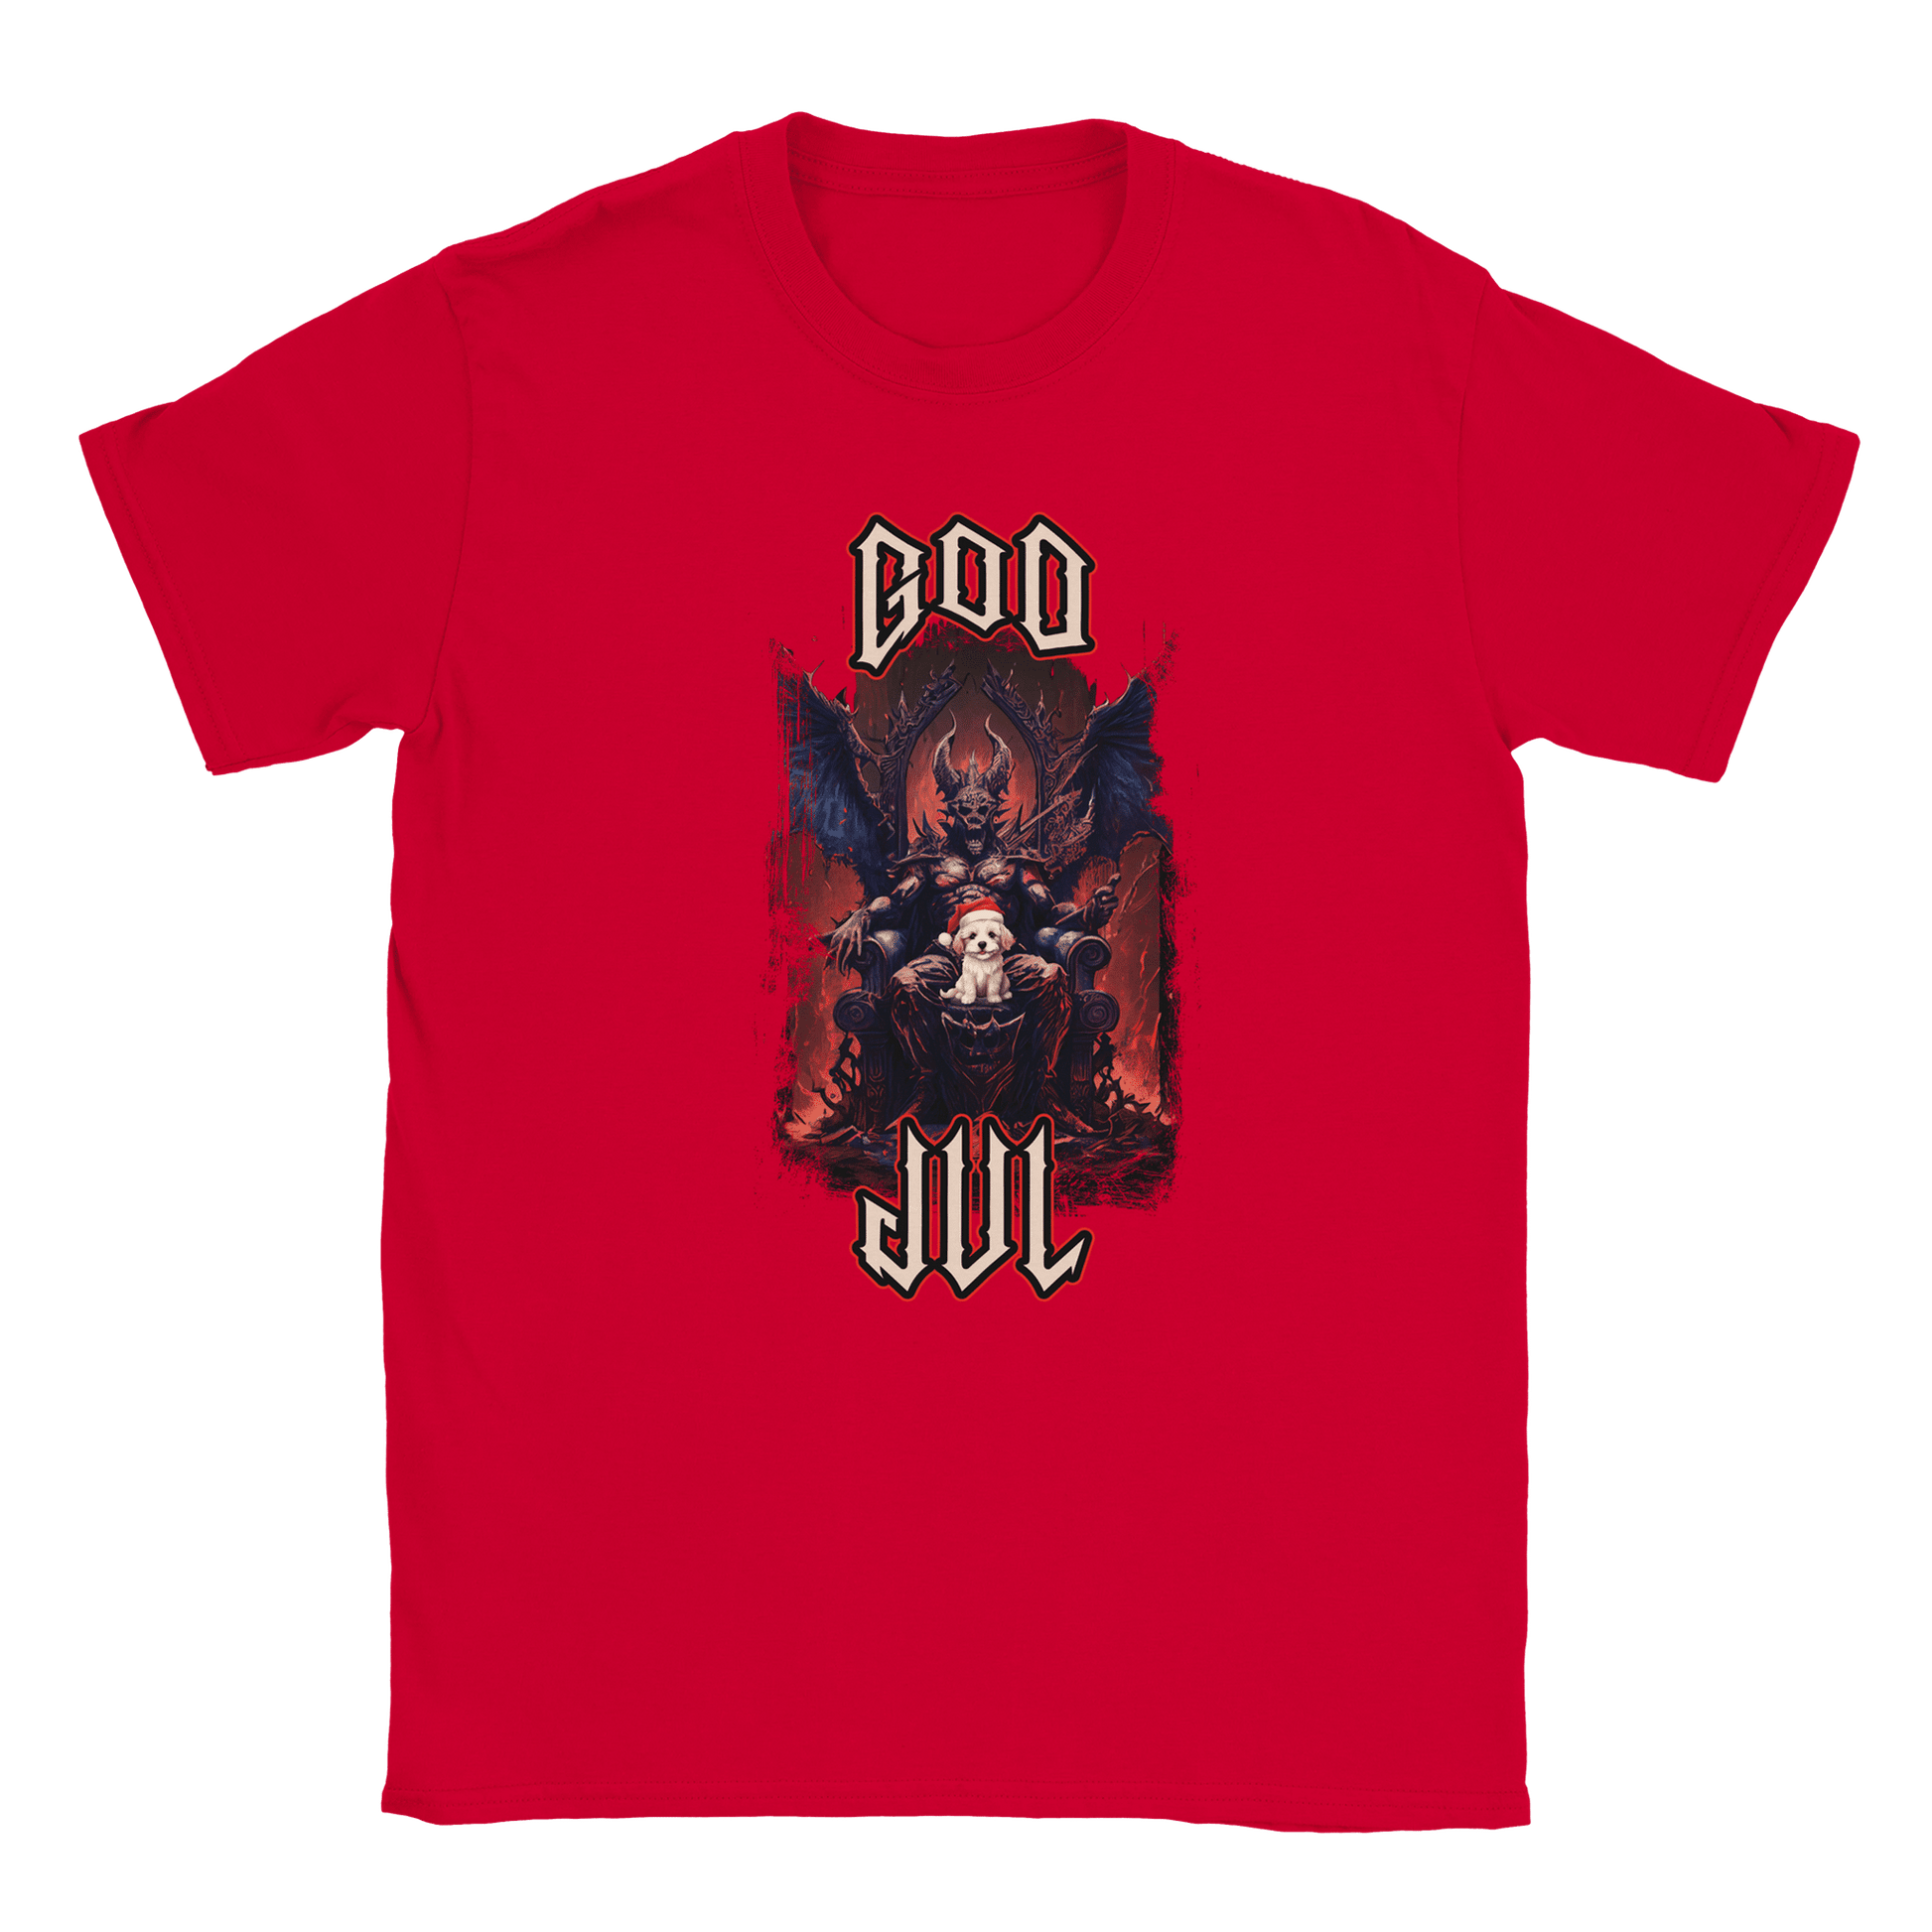 God Jul häftig hundvalp - T-shirt Röd